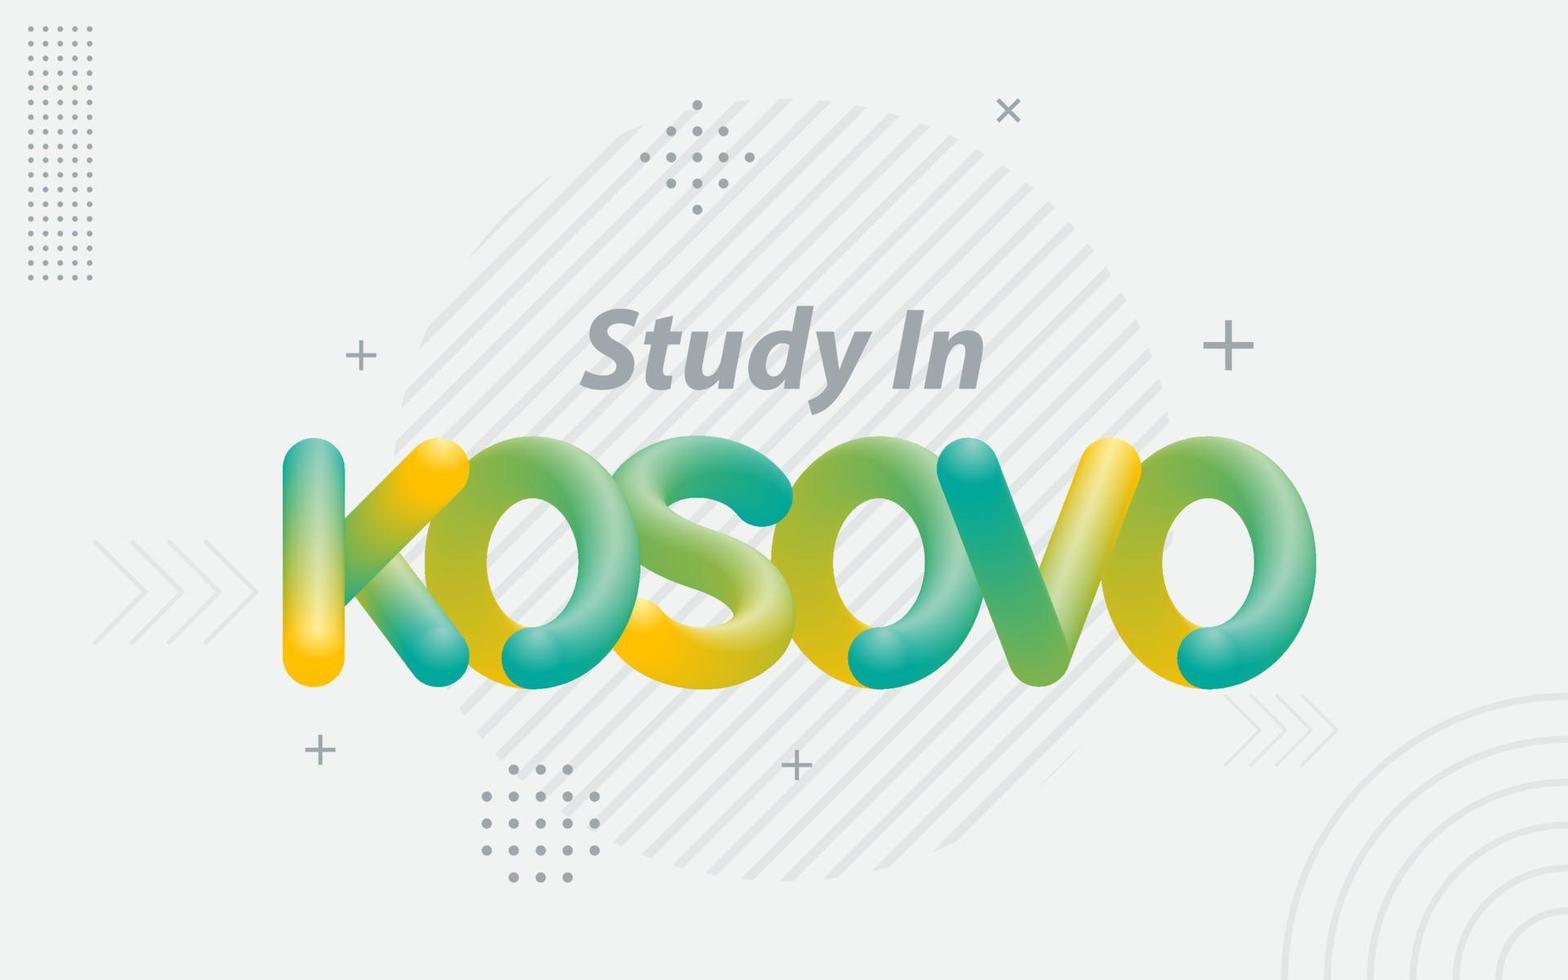 étudier au kosovo. typographie créative avec effet de mélange 3d vecteur